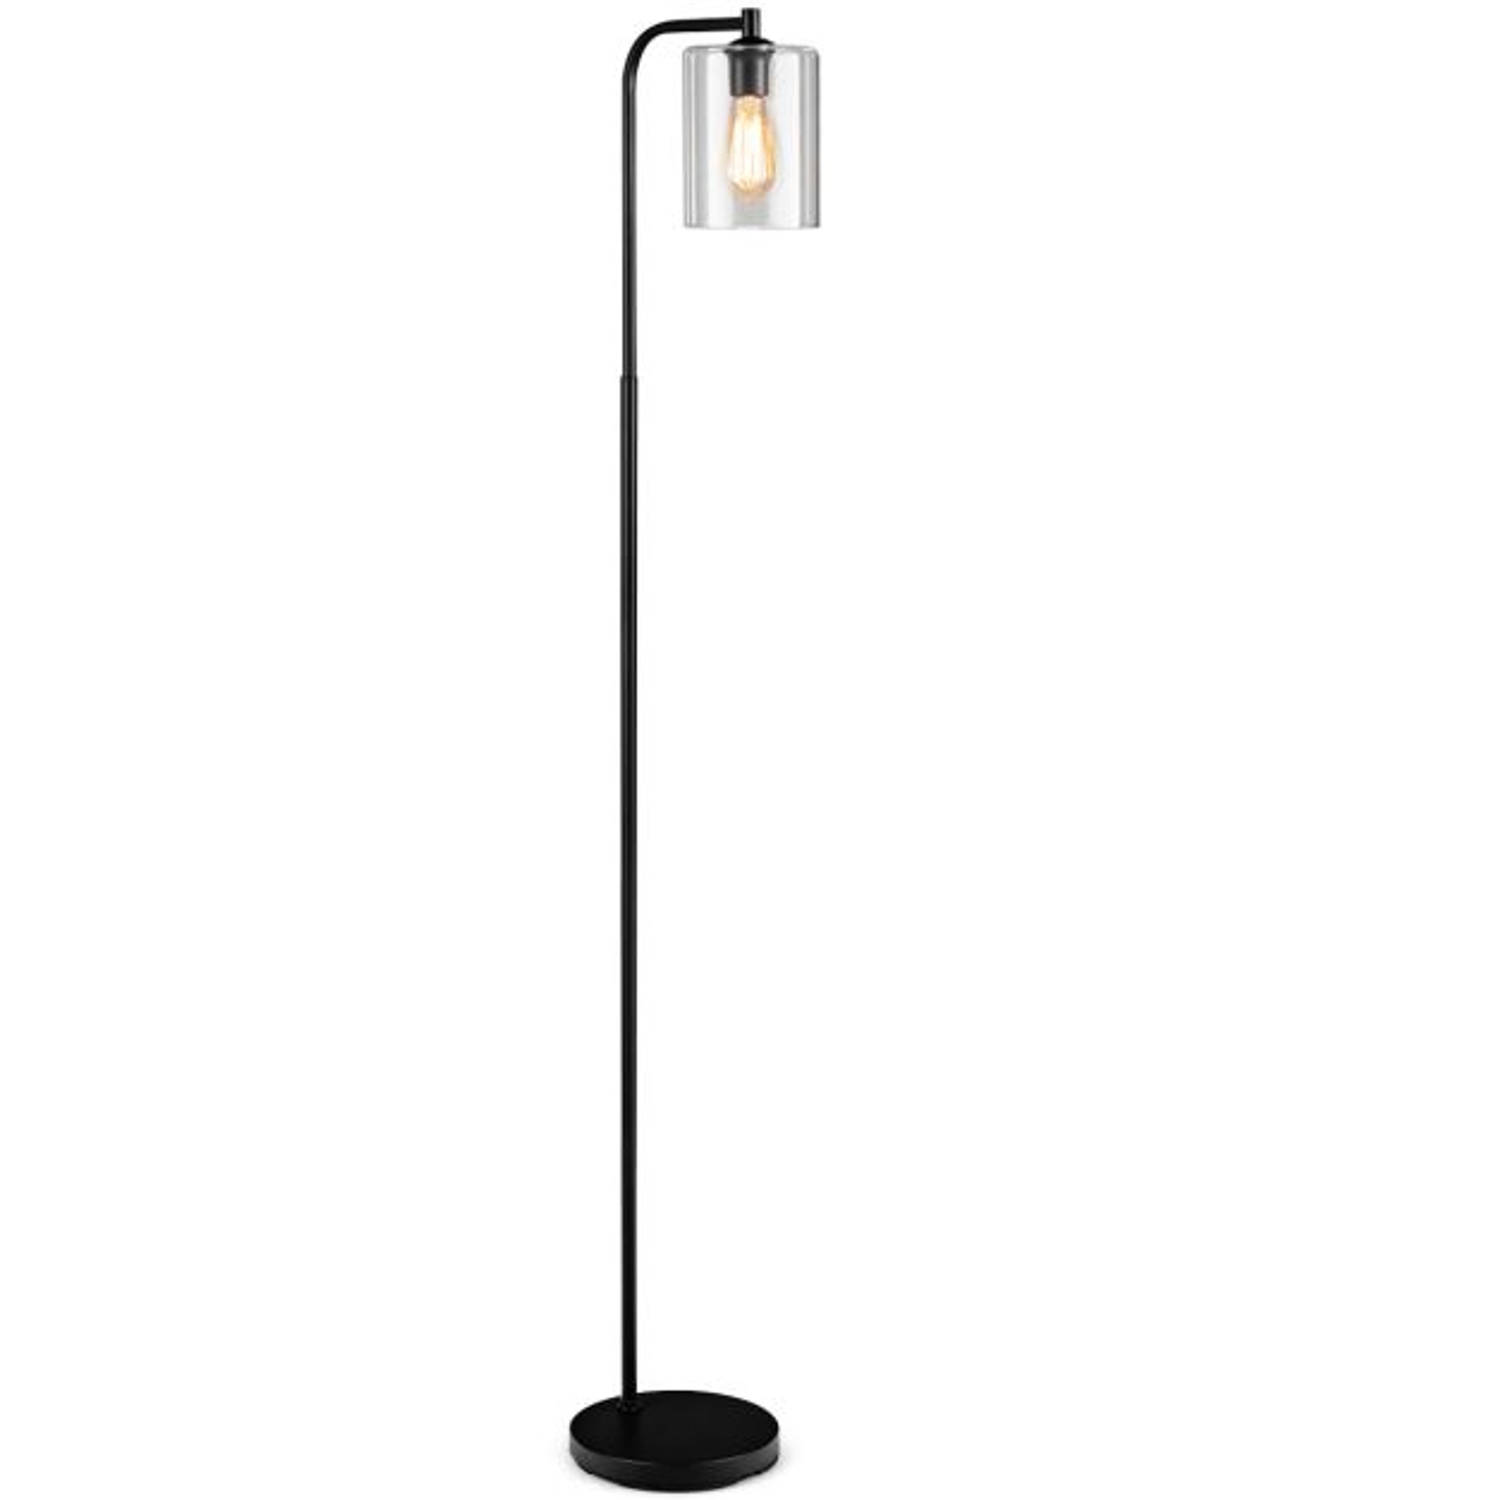 Vloerlamp - Industrieel - Staande lamp - Leeslamp - Stalamp - Modern Vloerlamp woonkamer - Staande lamp slaapkamer - Zwart - Ø25 x 168H cm